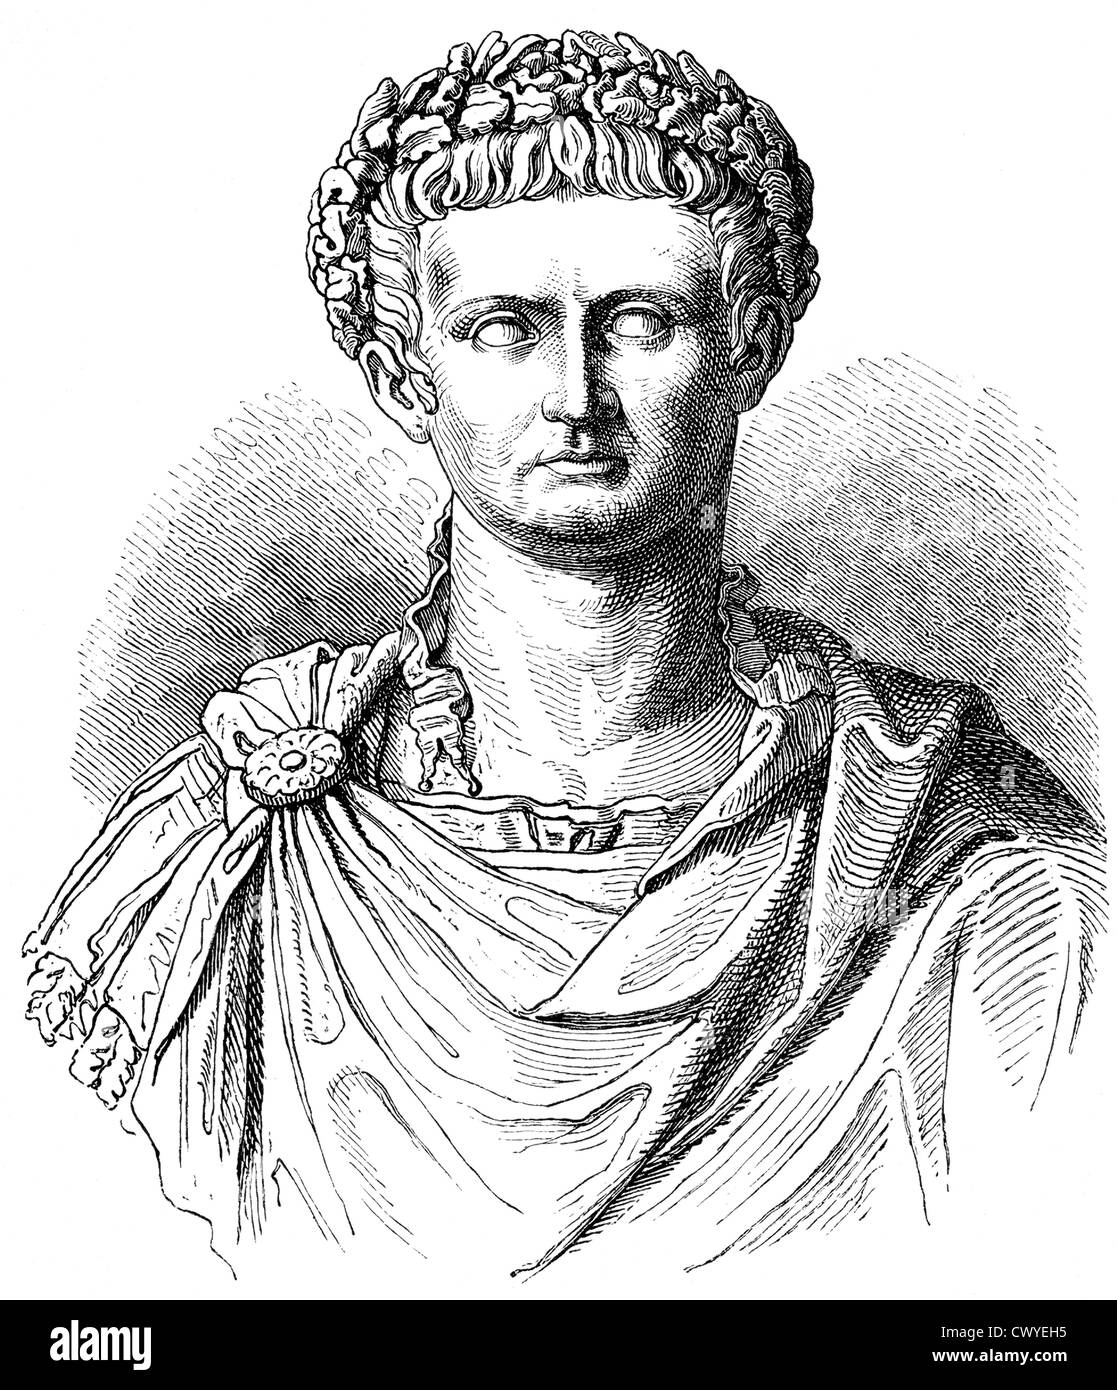 Tiberius Julius Caesar Augustus oder Tiberius Claudius Nero, 42 v. Chr. - 37 n. Chr., zweiter Kaiser des römischen Reiches Stockfoto